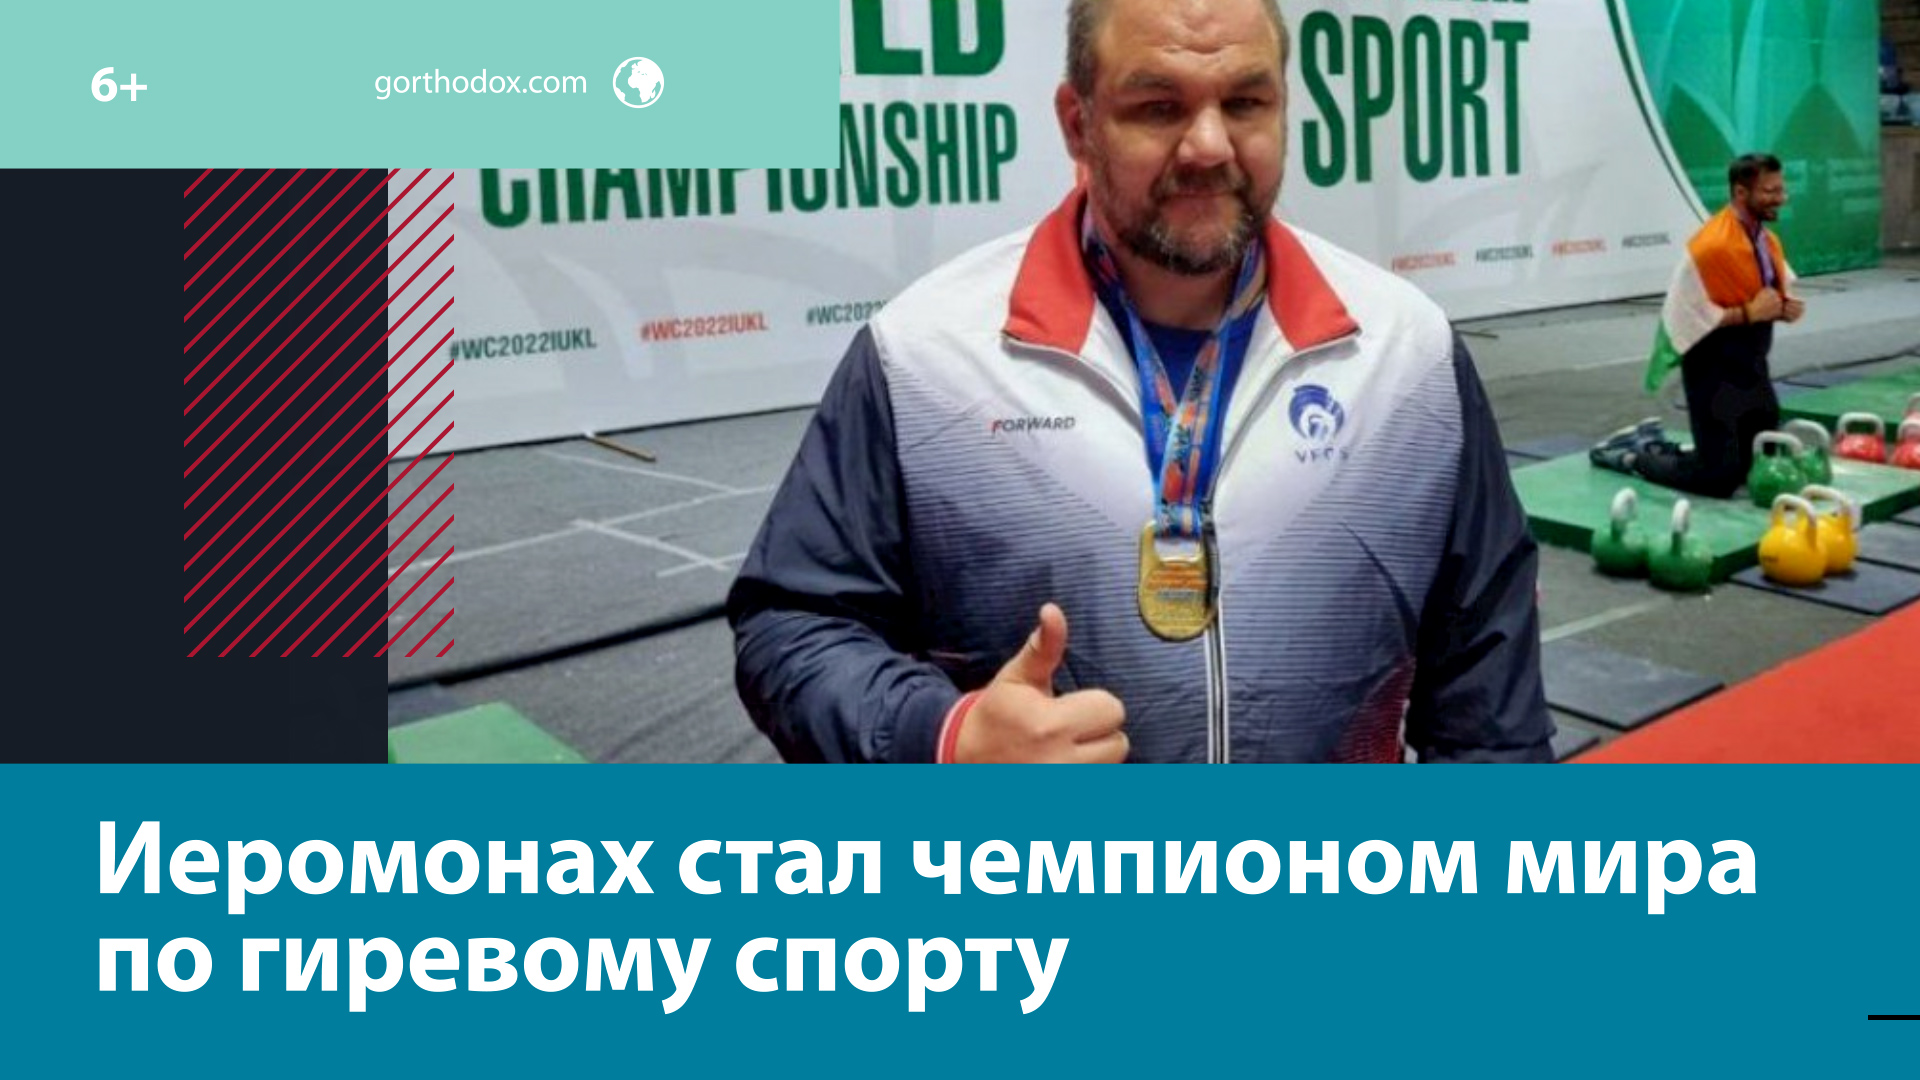 Российский иеромонах победил на чемпионате мира по гиревому спорту — Москва FM